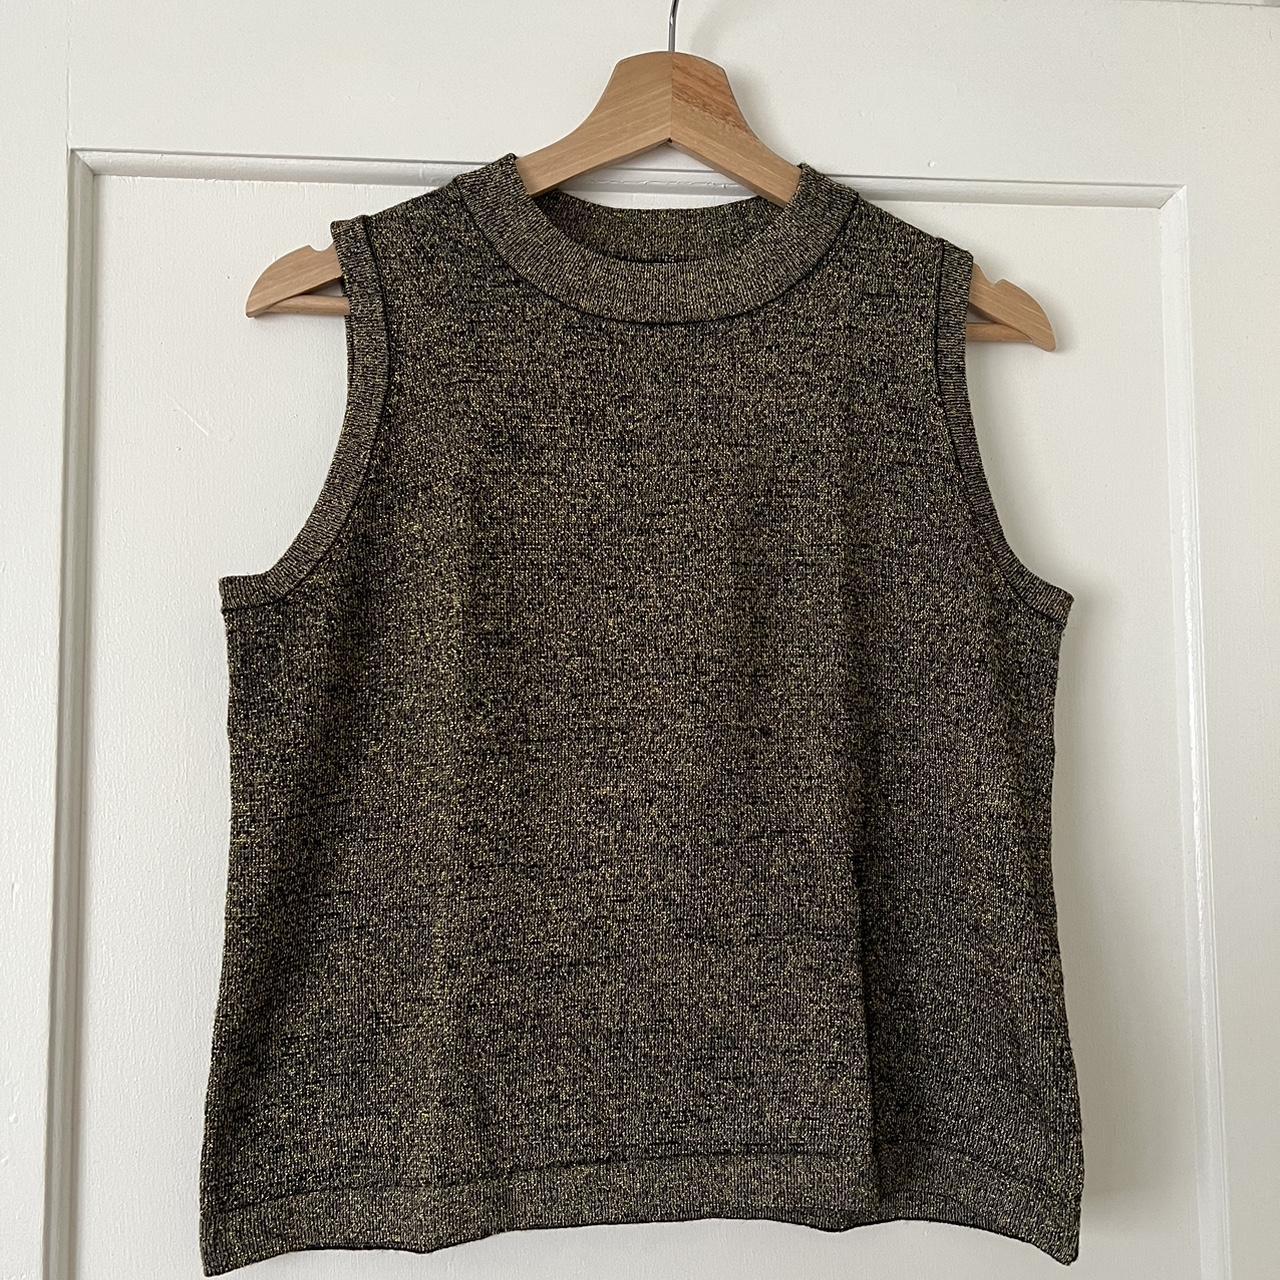 Gorman gold knit vest size 12 75% merino 25% polyester - Depop